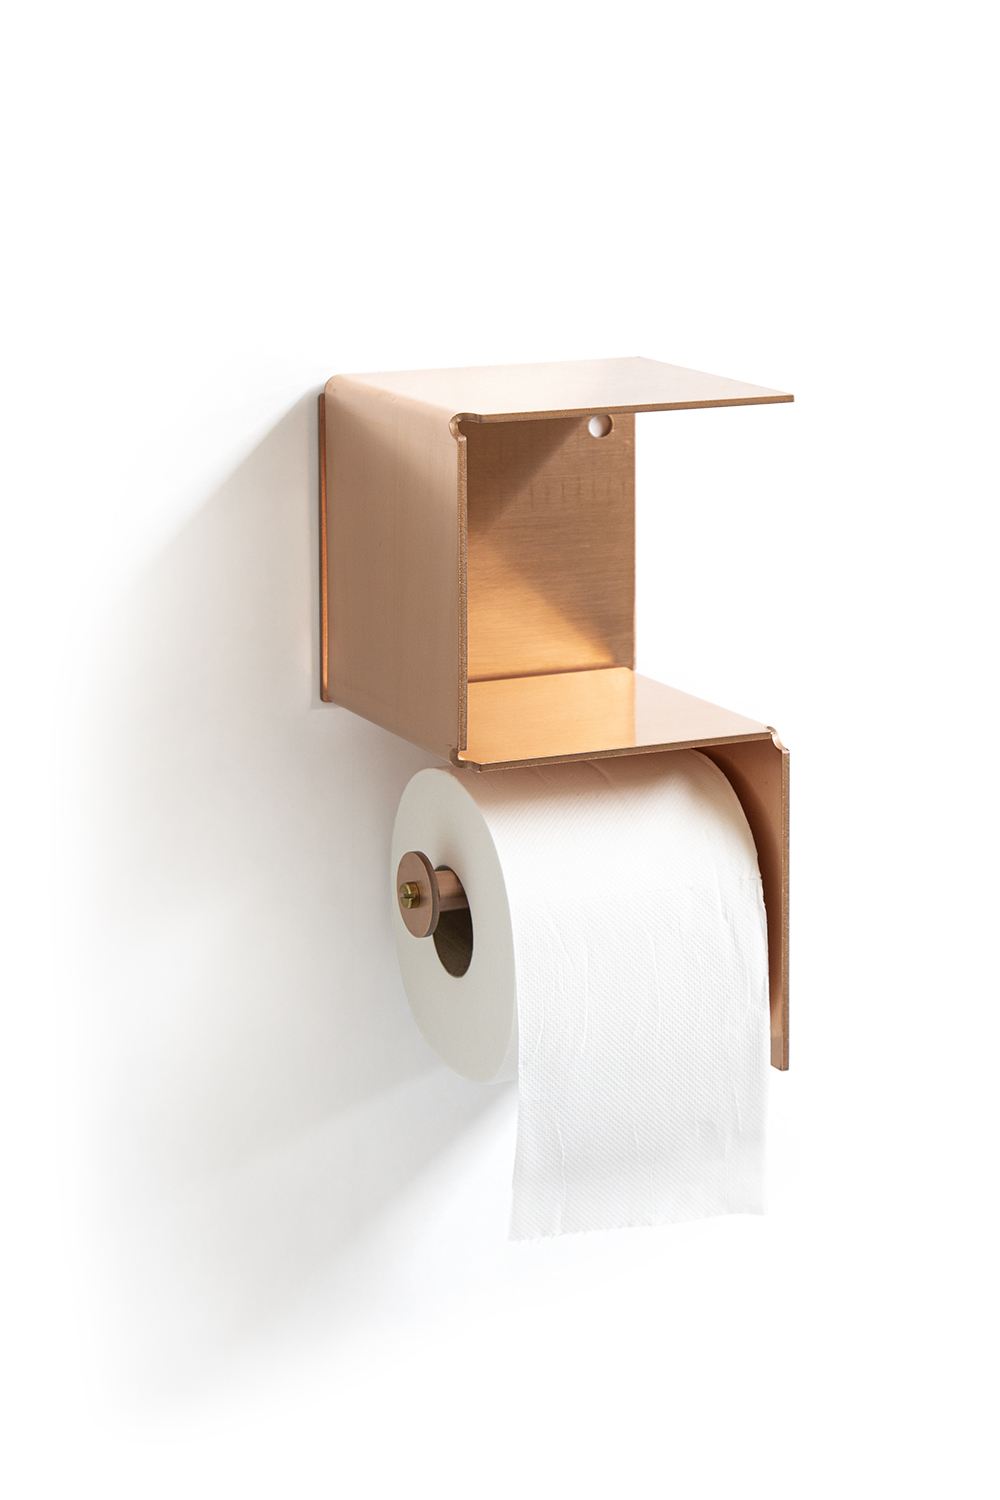 wetenschappelijk Dempsey Typisch Toilet papier houder - verticaal - Webshop Piet Hein Eek